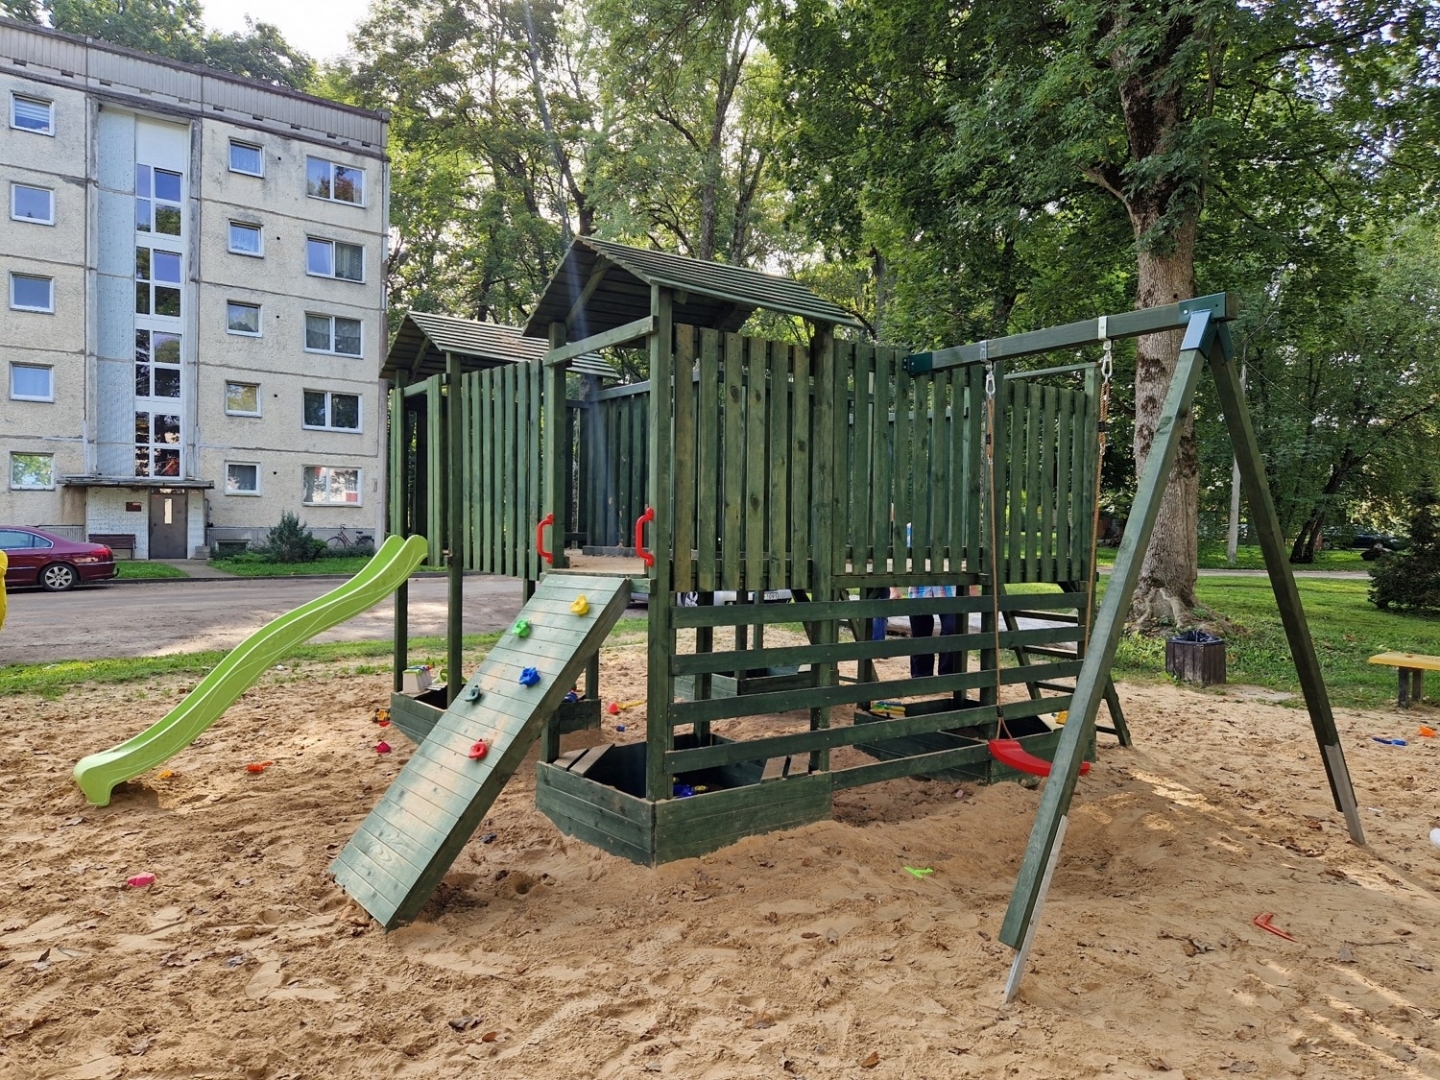 Bērnu rotaļu laukuma konstrukcija daudzdzīvokļu māju pagalmā